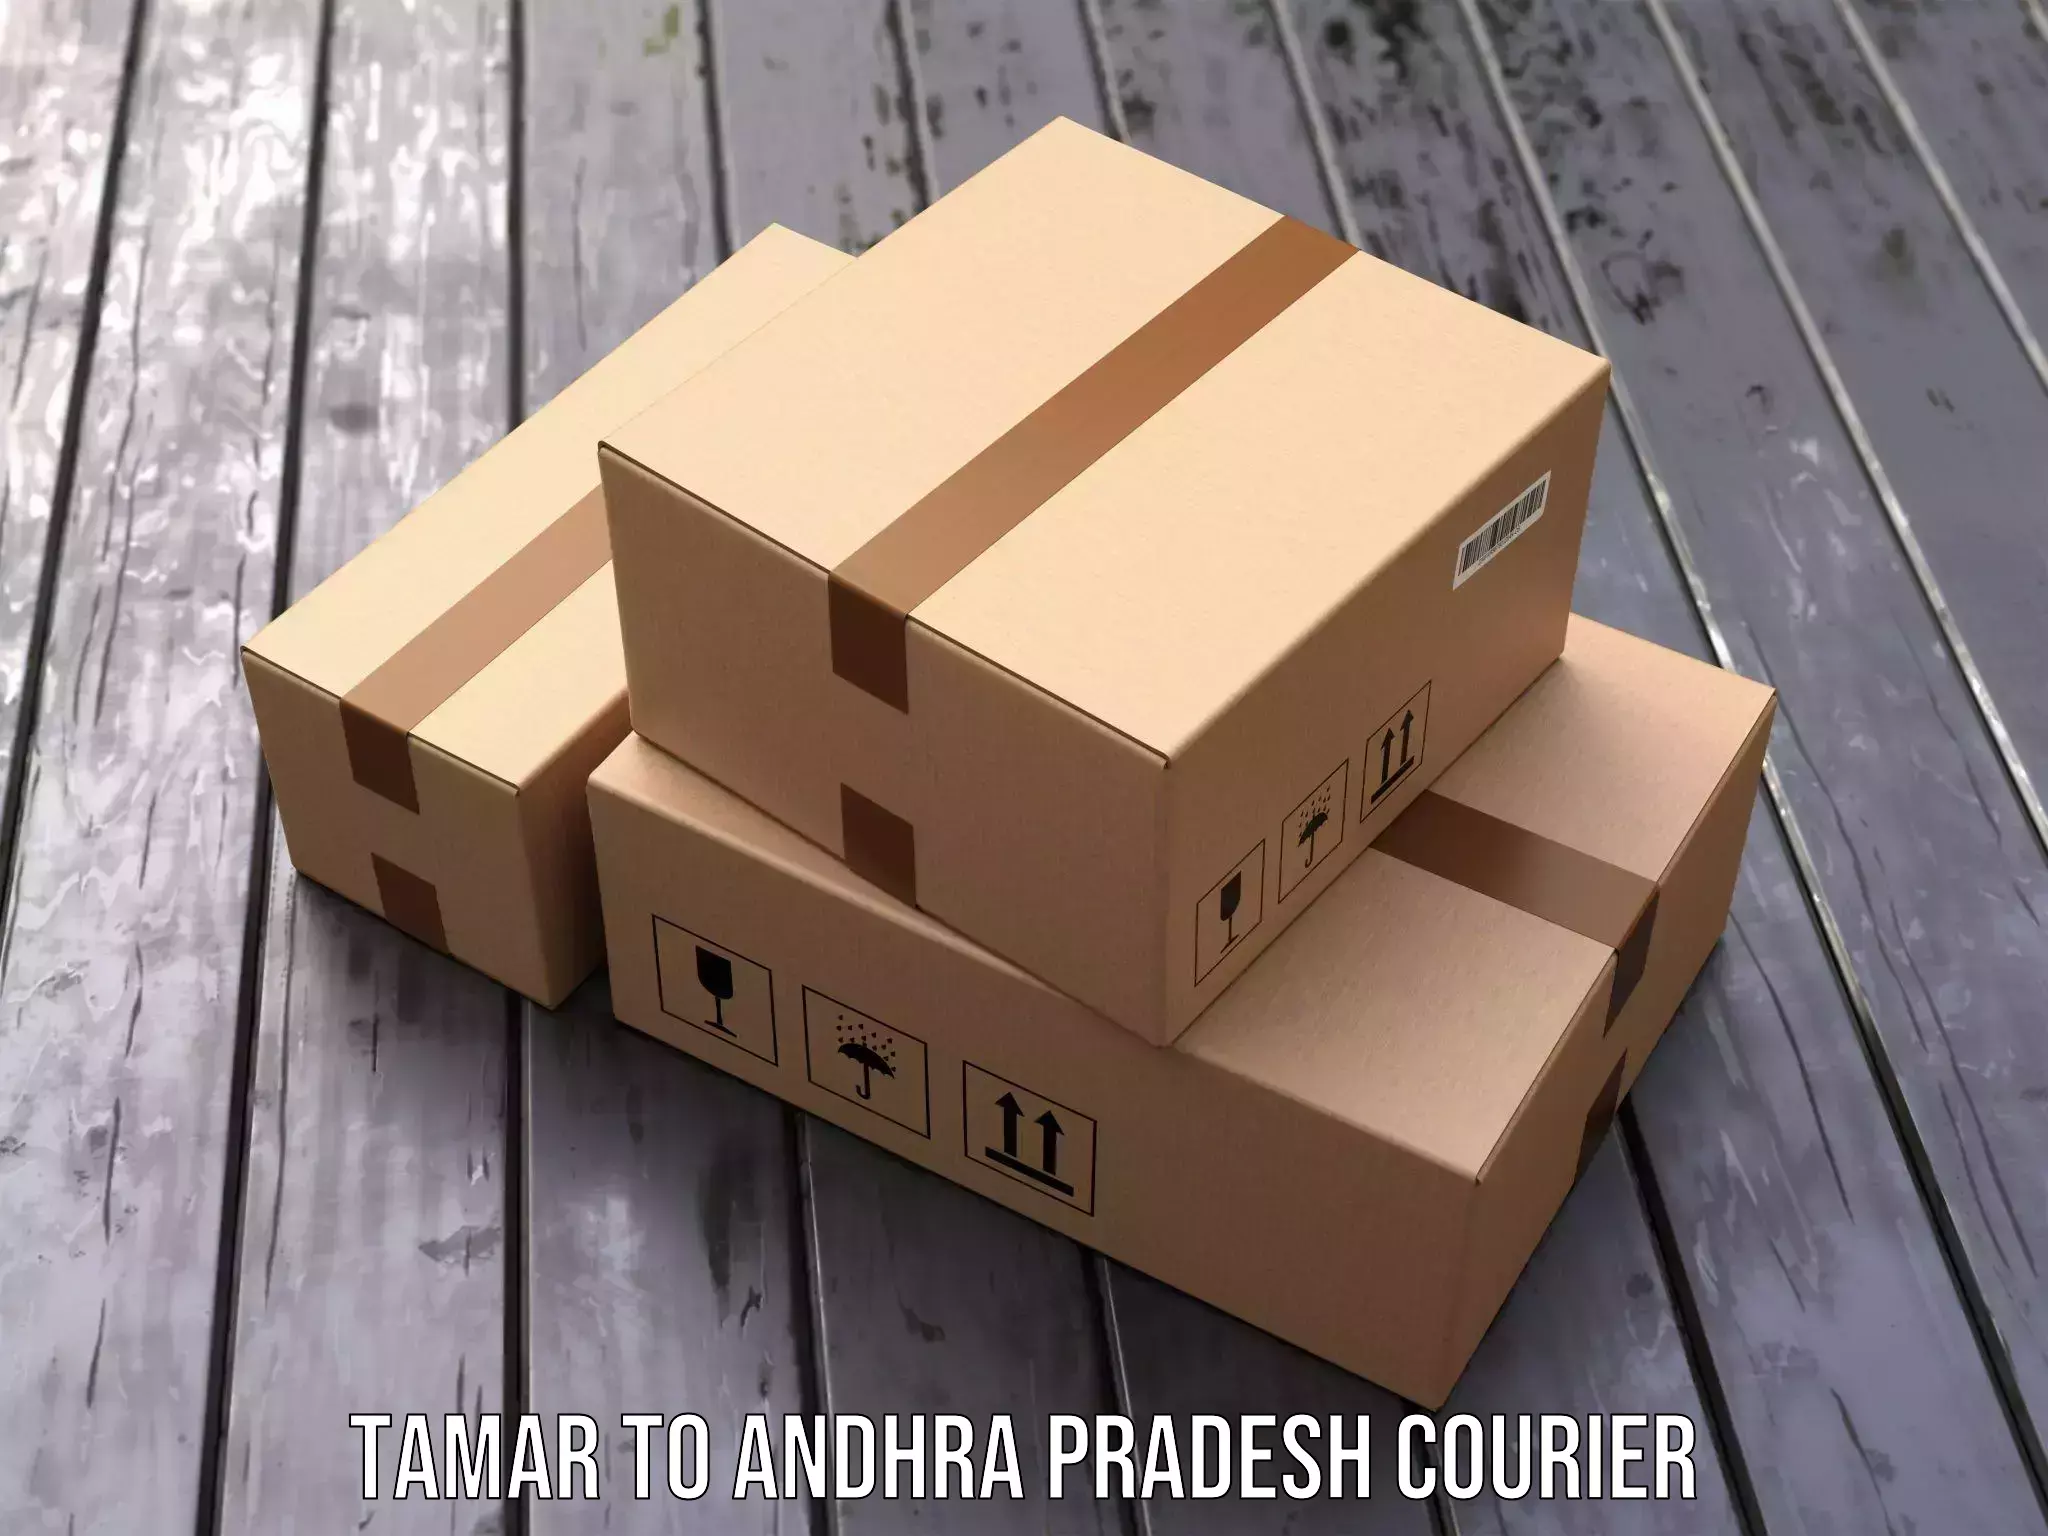 Cost-effective courier options Tamar to Betamcherla